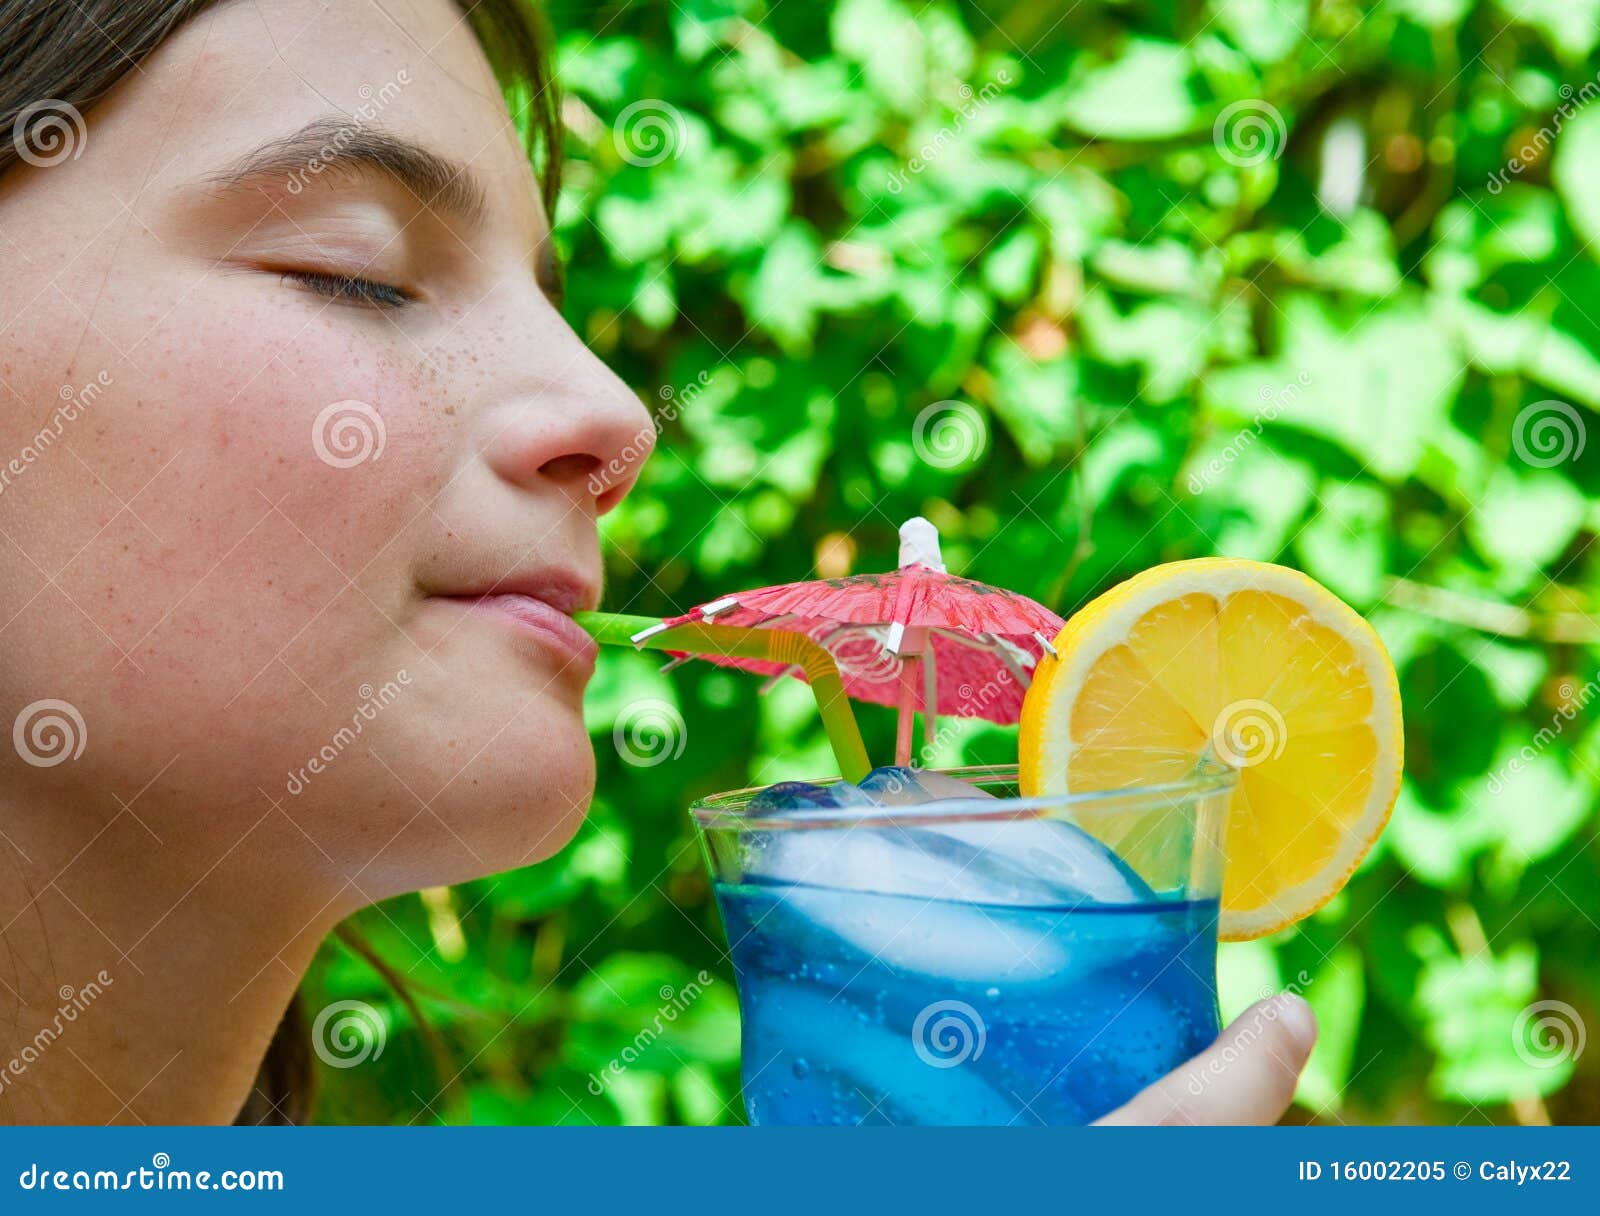 Summer Drink - summer-drink-16002205